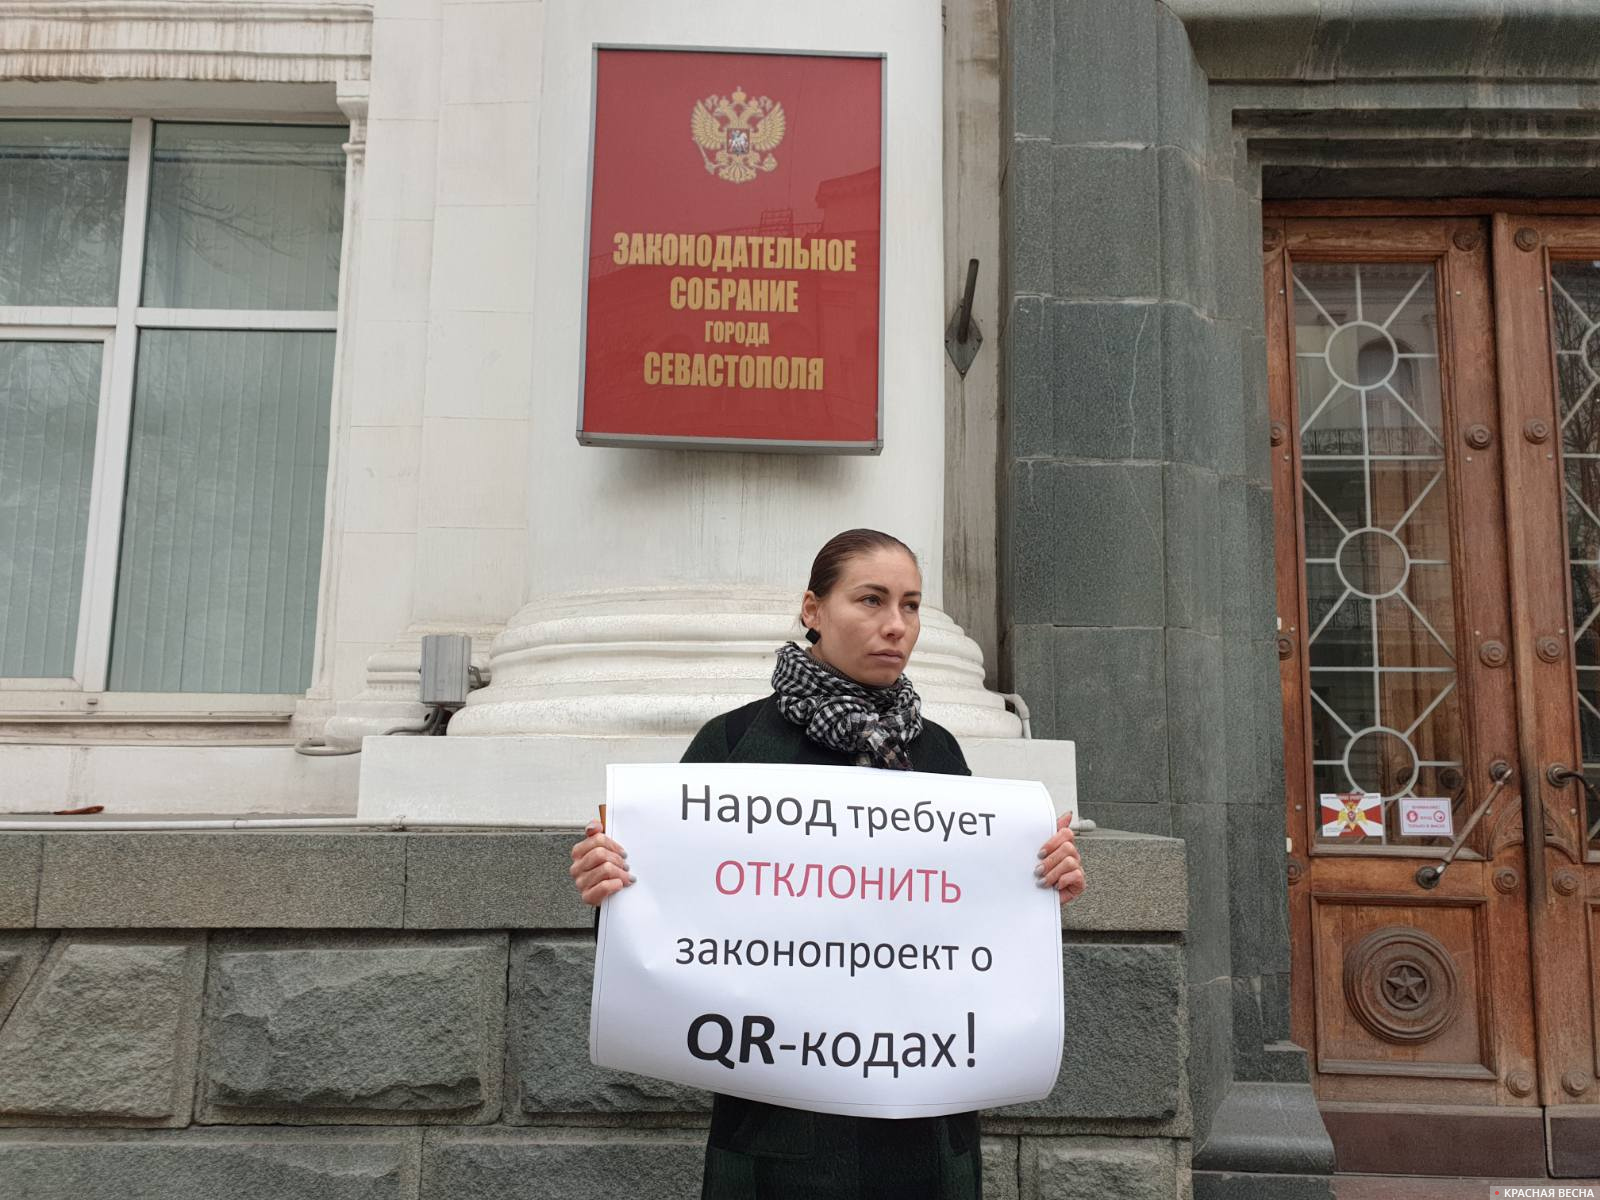 Пикет против законопроекта о QR-кодах возле Заксобрания Севастополя